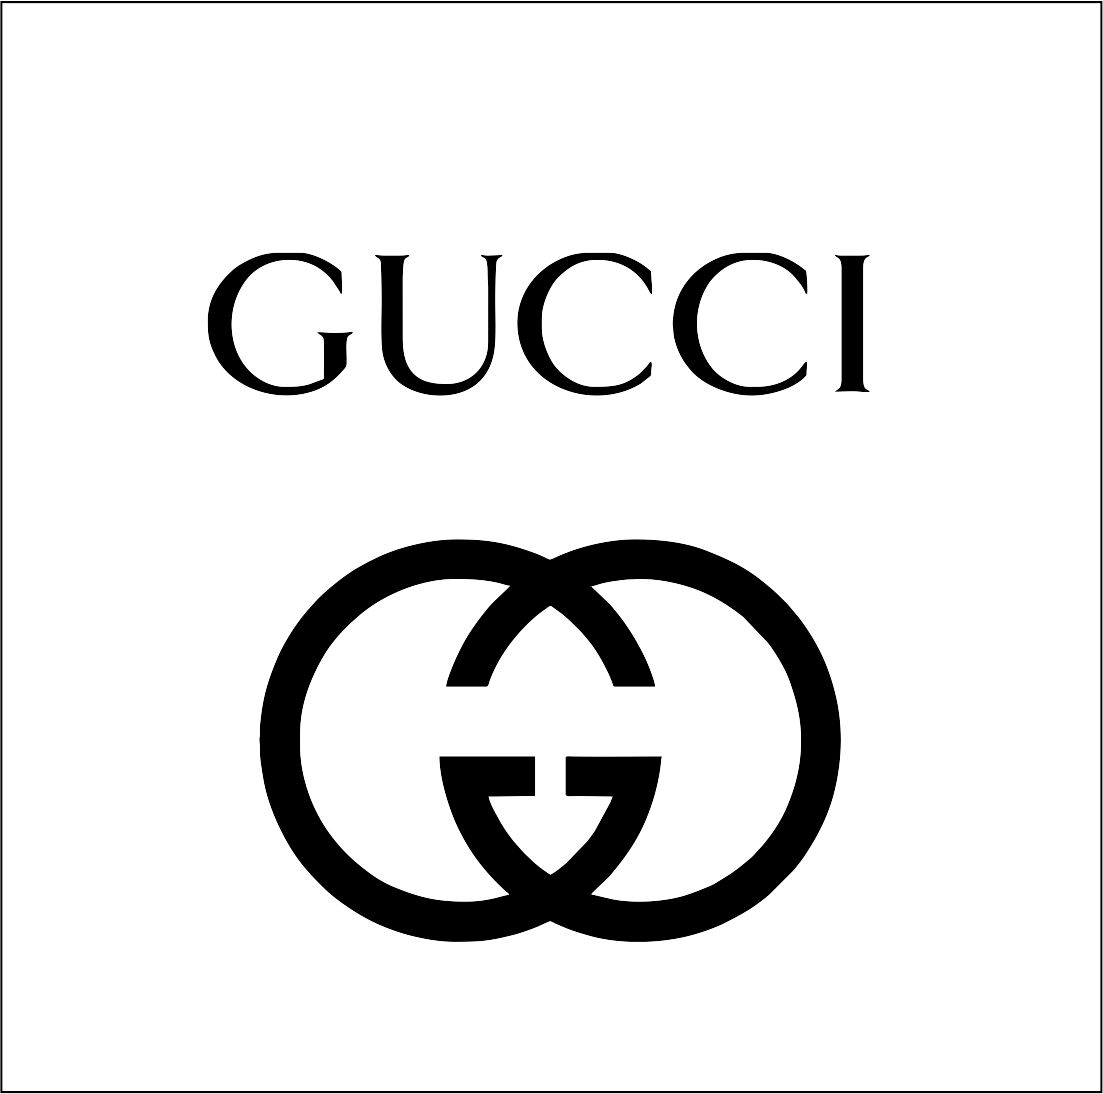 Gucci Black Band SVG, Download Gucci Brand Vector File, Gucci Black Band png  file, Gucci Black Band SVG silhouette EPS file, Gu…